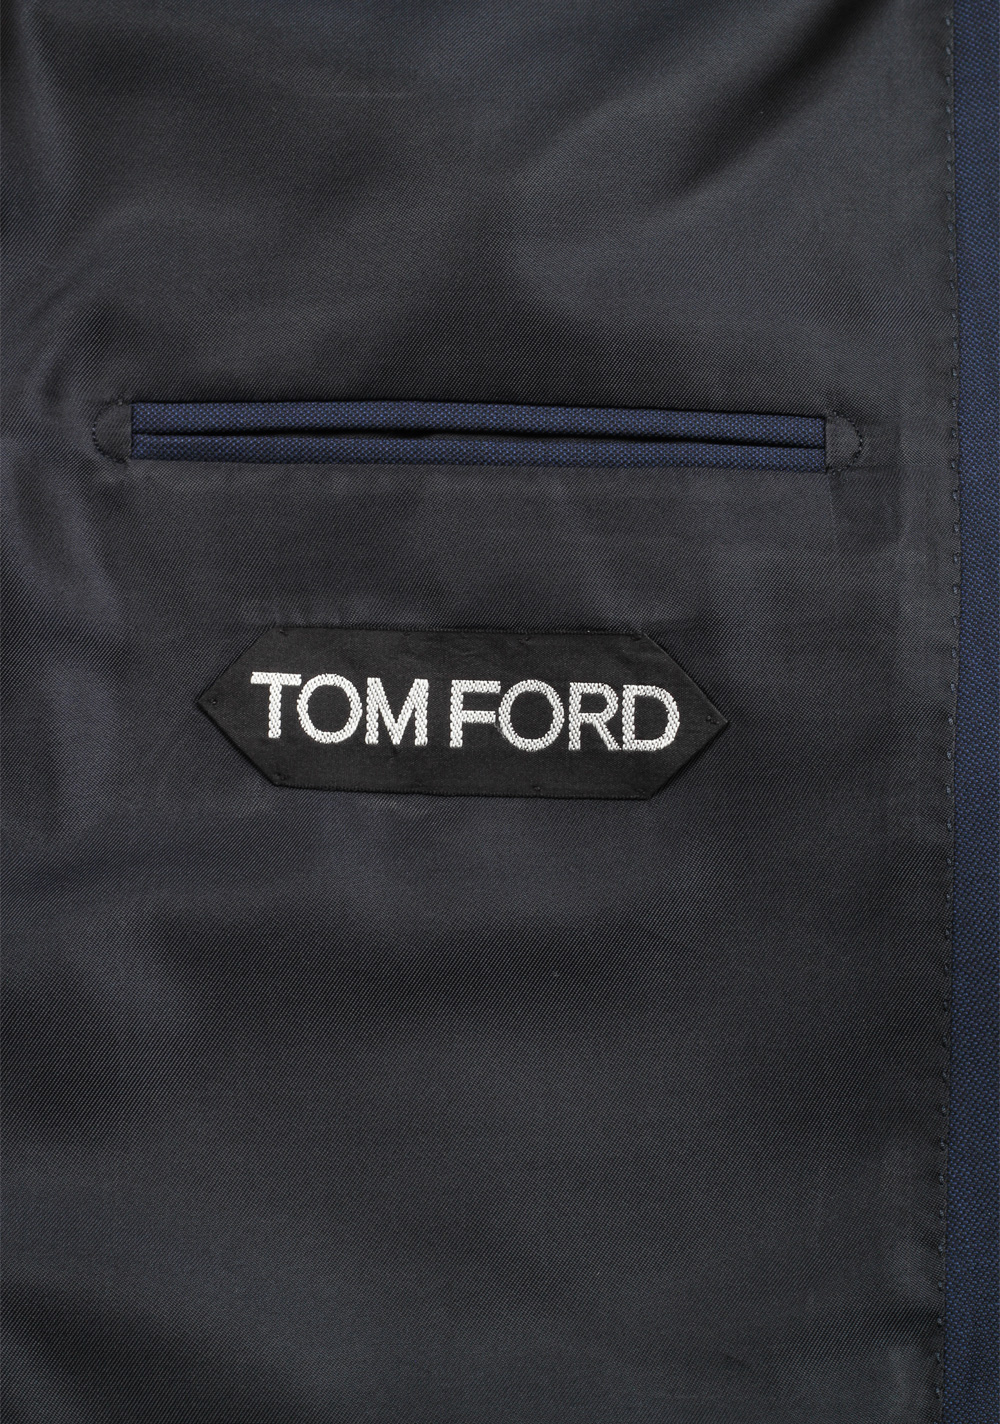 TOM FORD Shelton Solid Blue Suit | Costume Limité